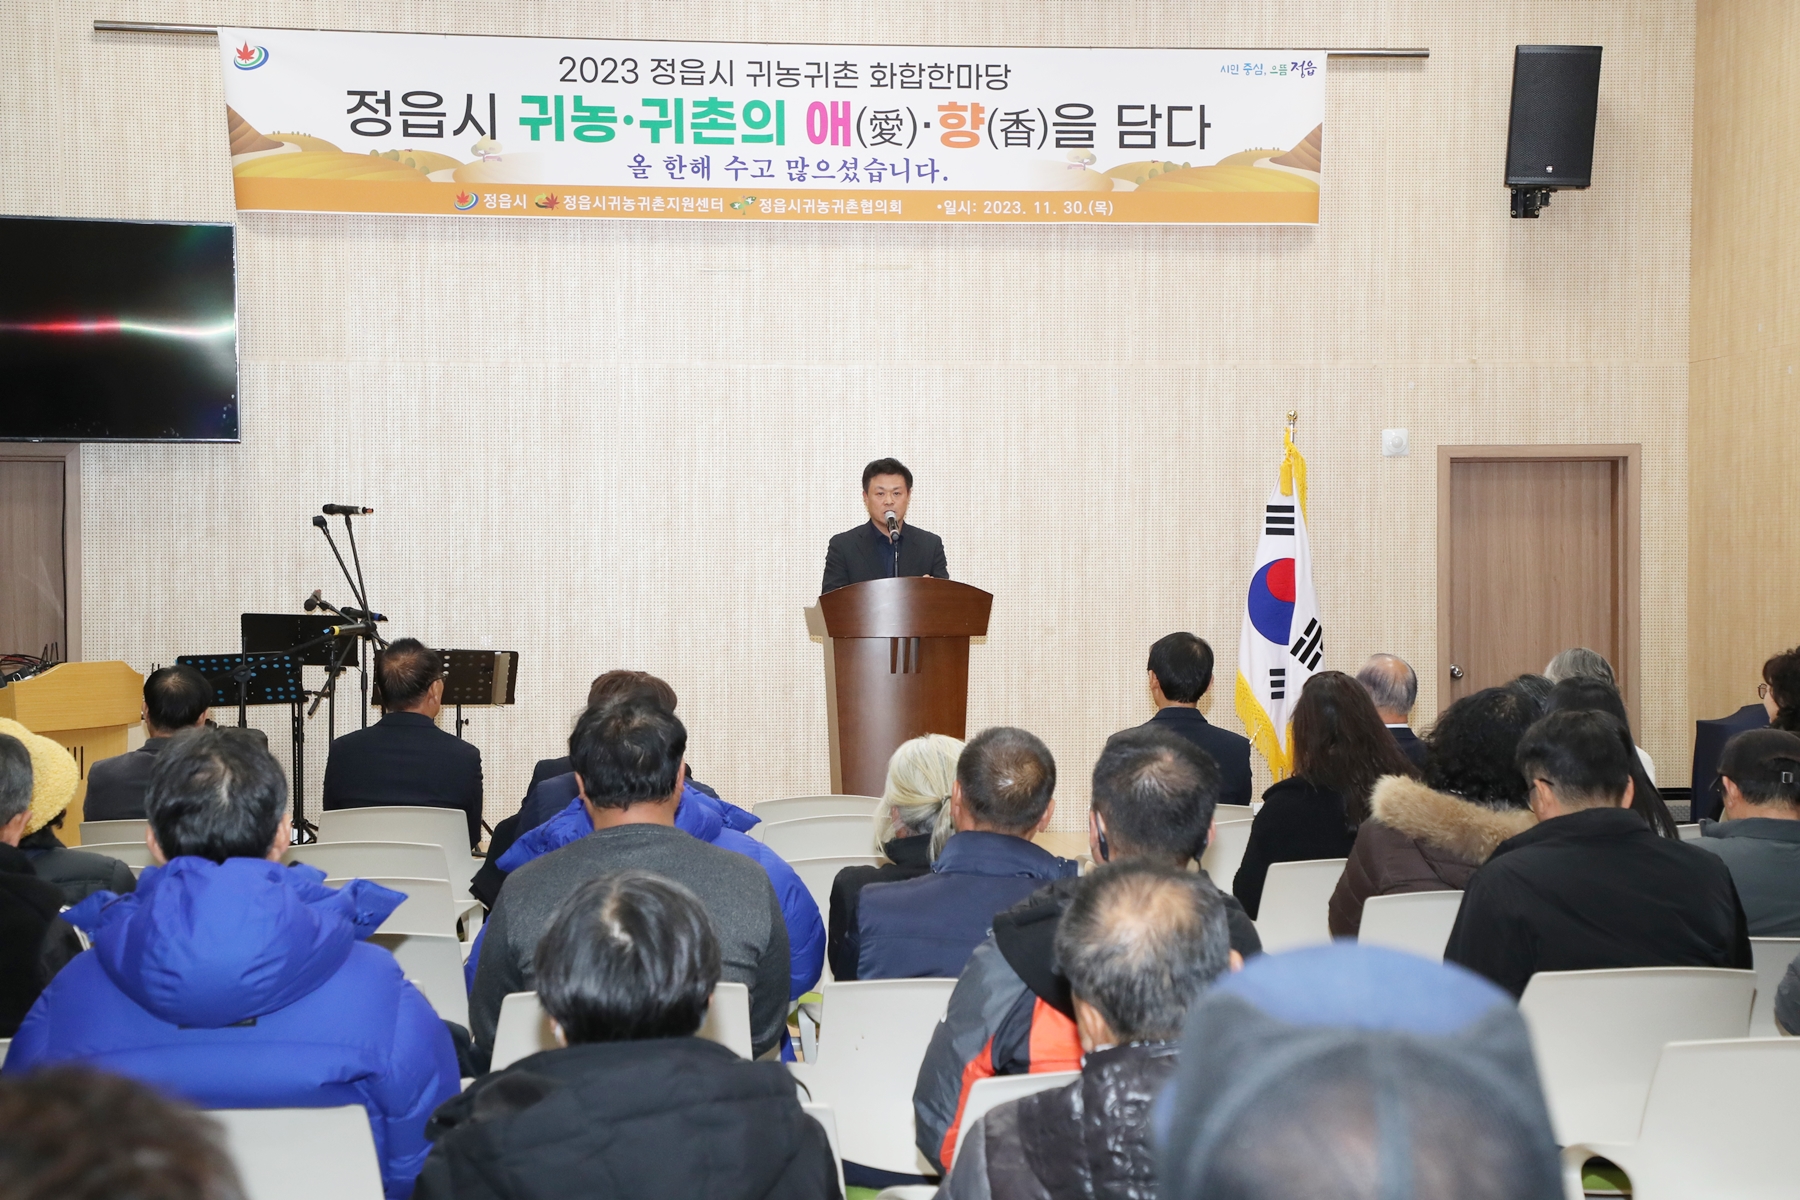 2023년 귀농귀촌 화합한마당 개최 (2023. 11. 30.)